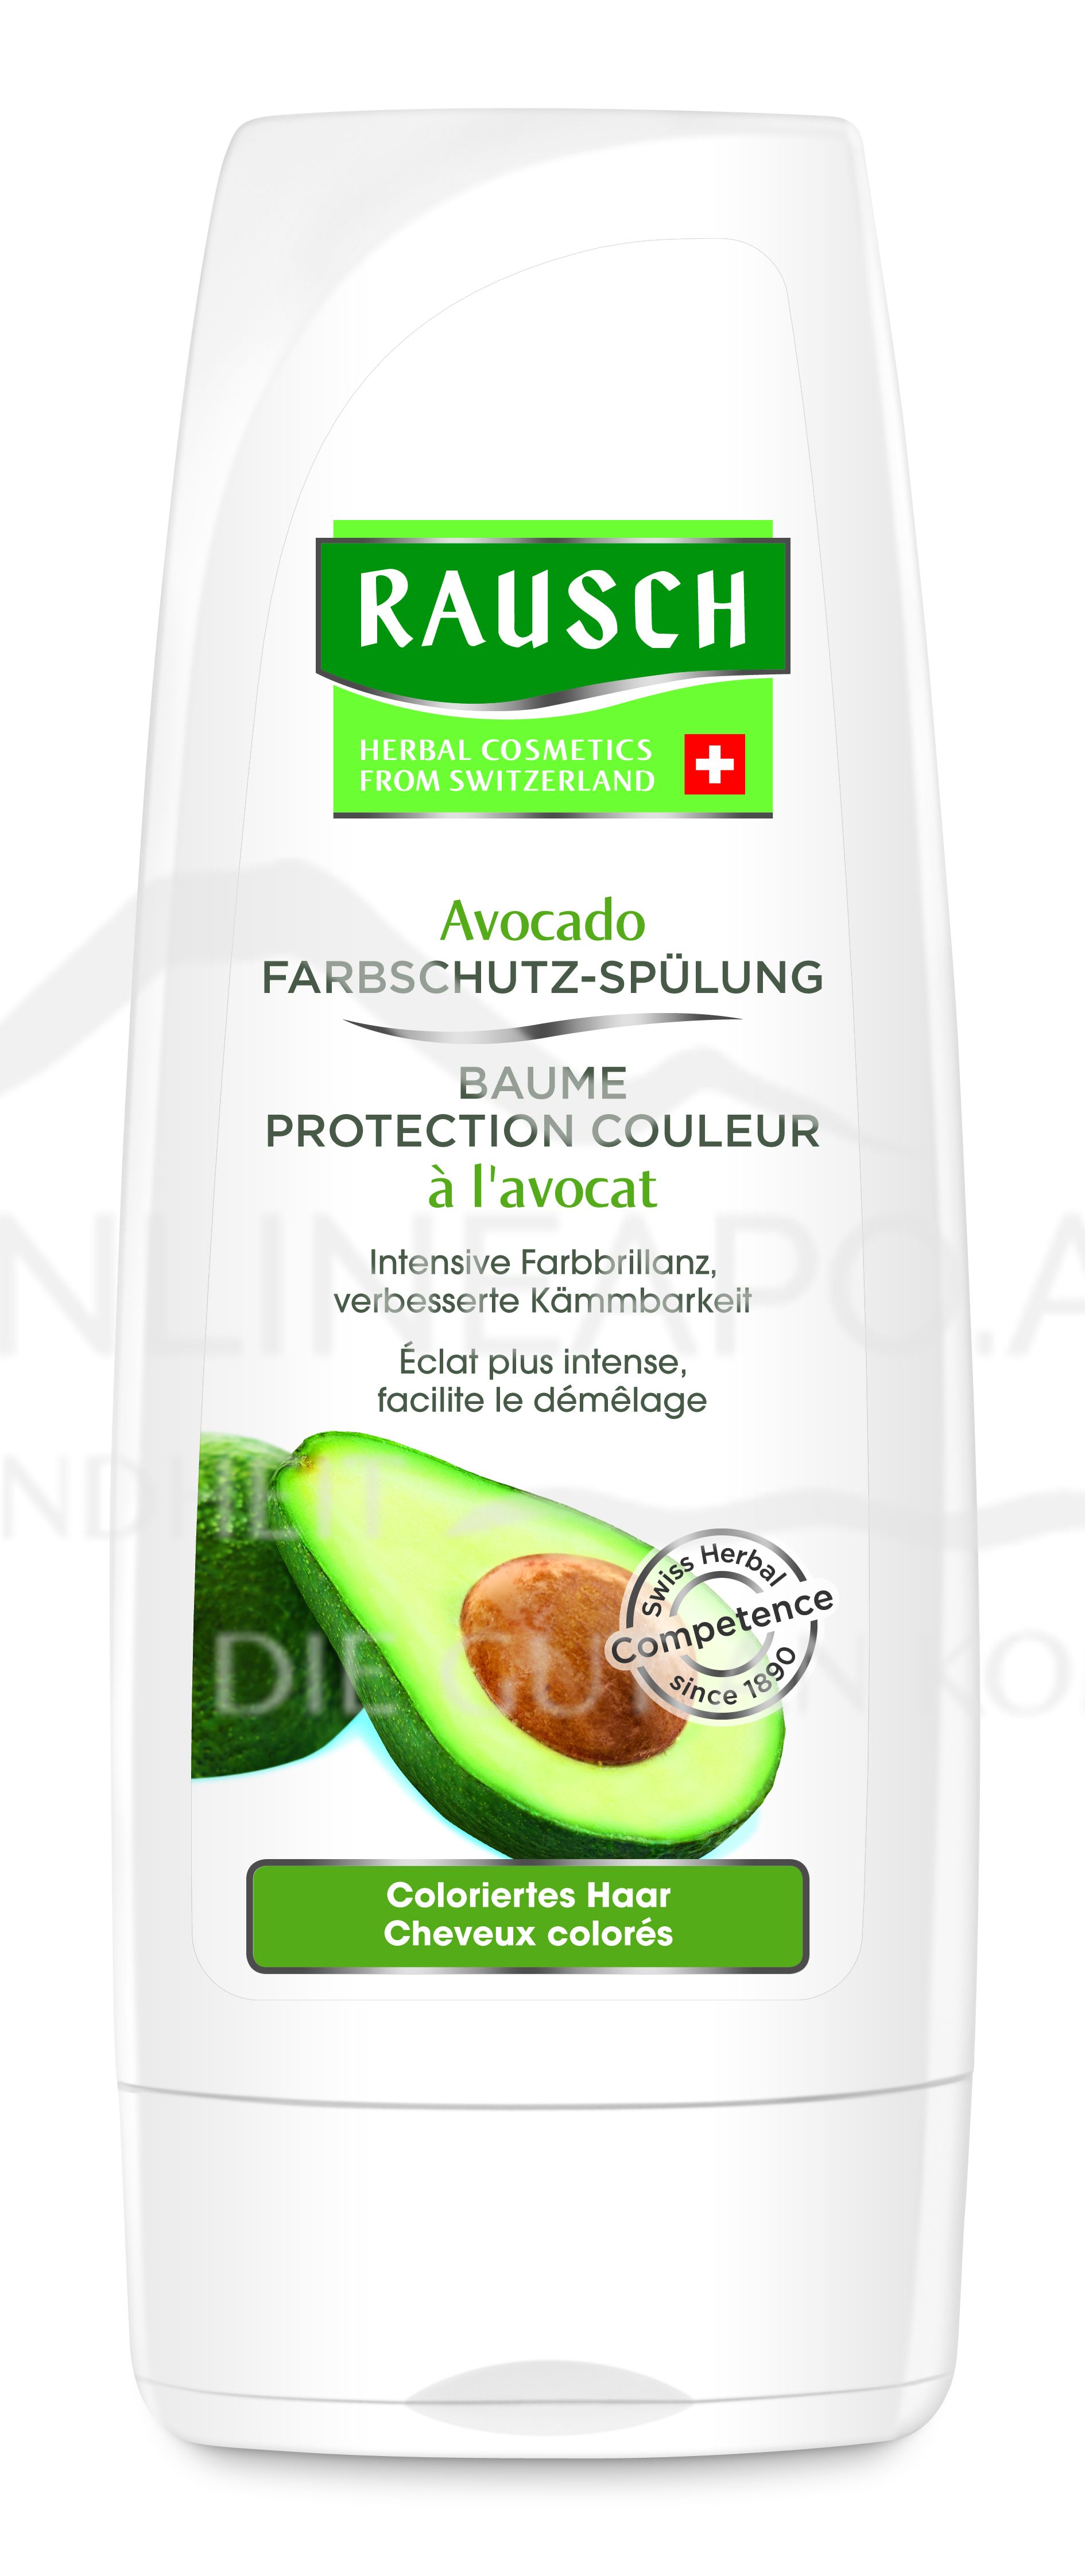 RAUSCH Avocado Farbschutz-Spülung